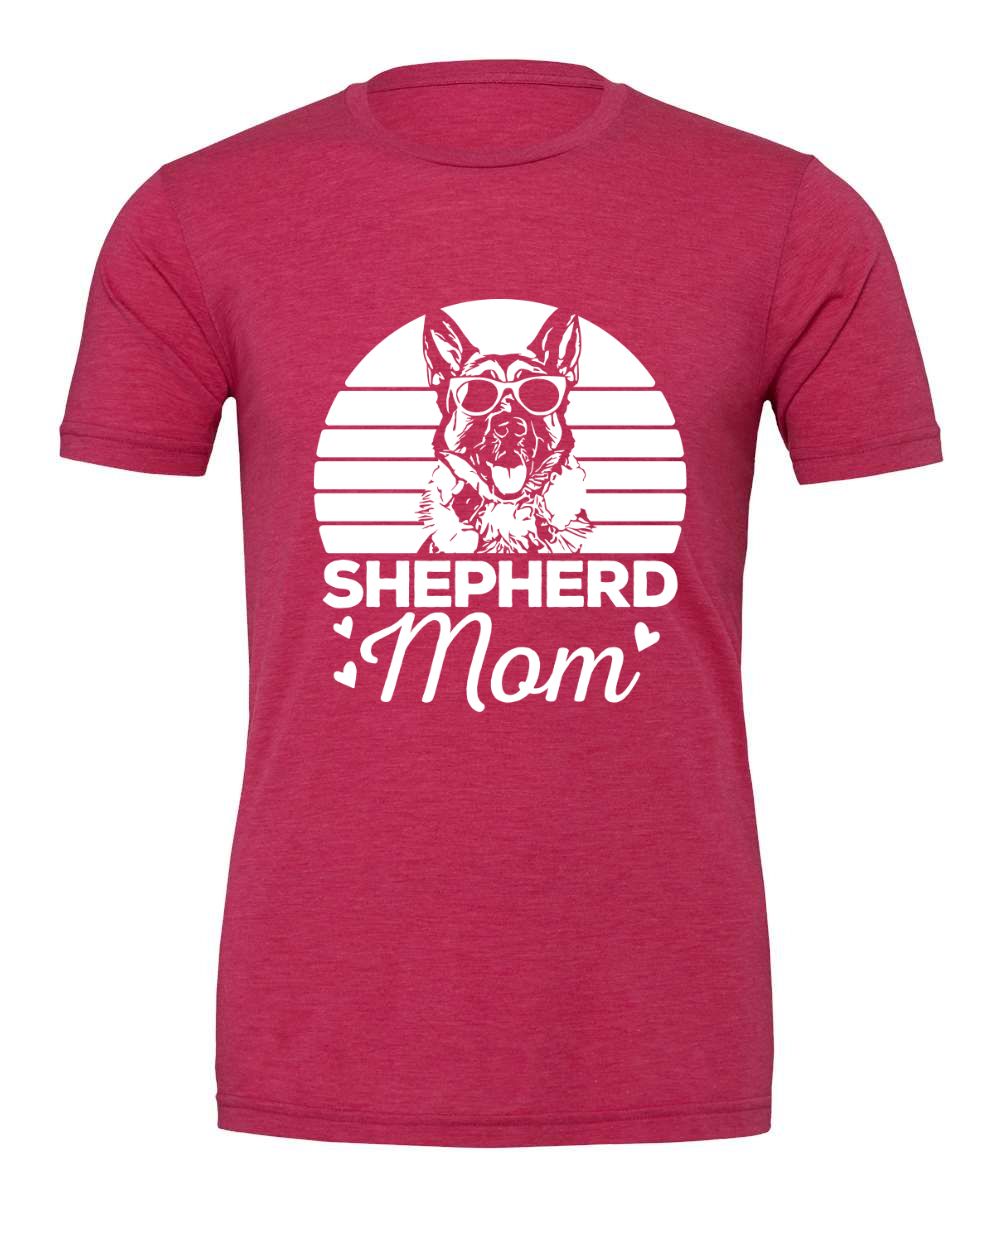 Shepherd Mom T-Shirt - White Design